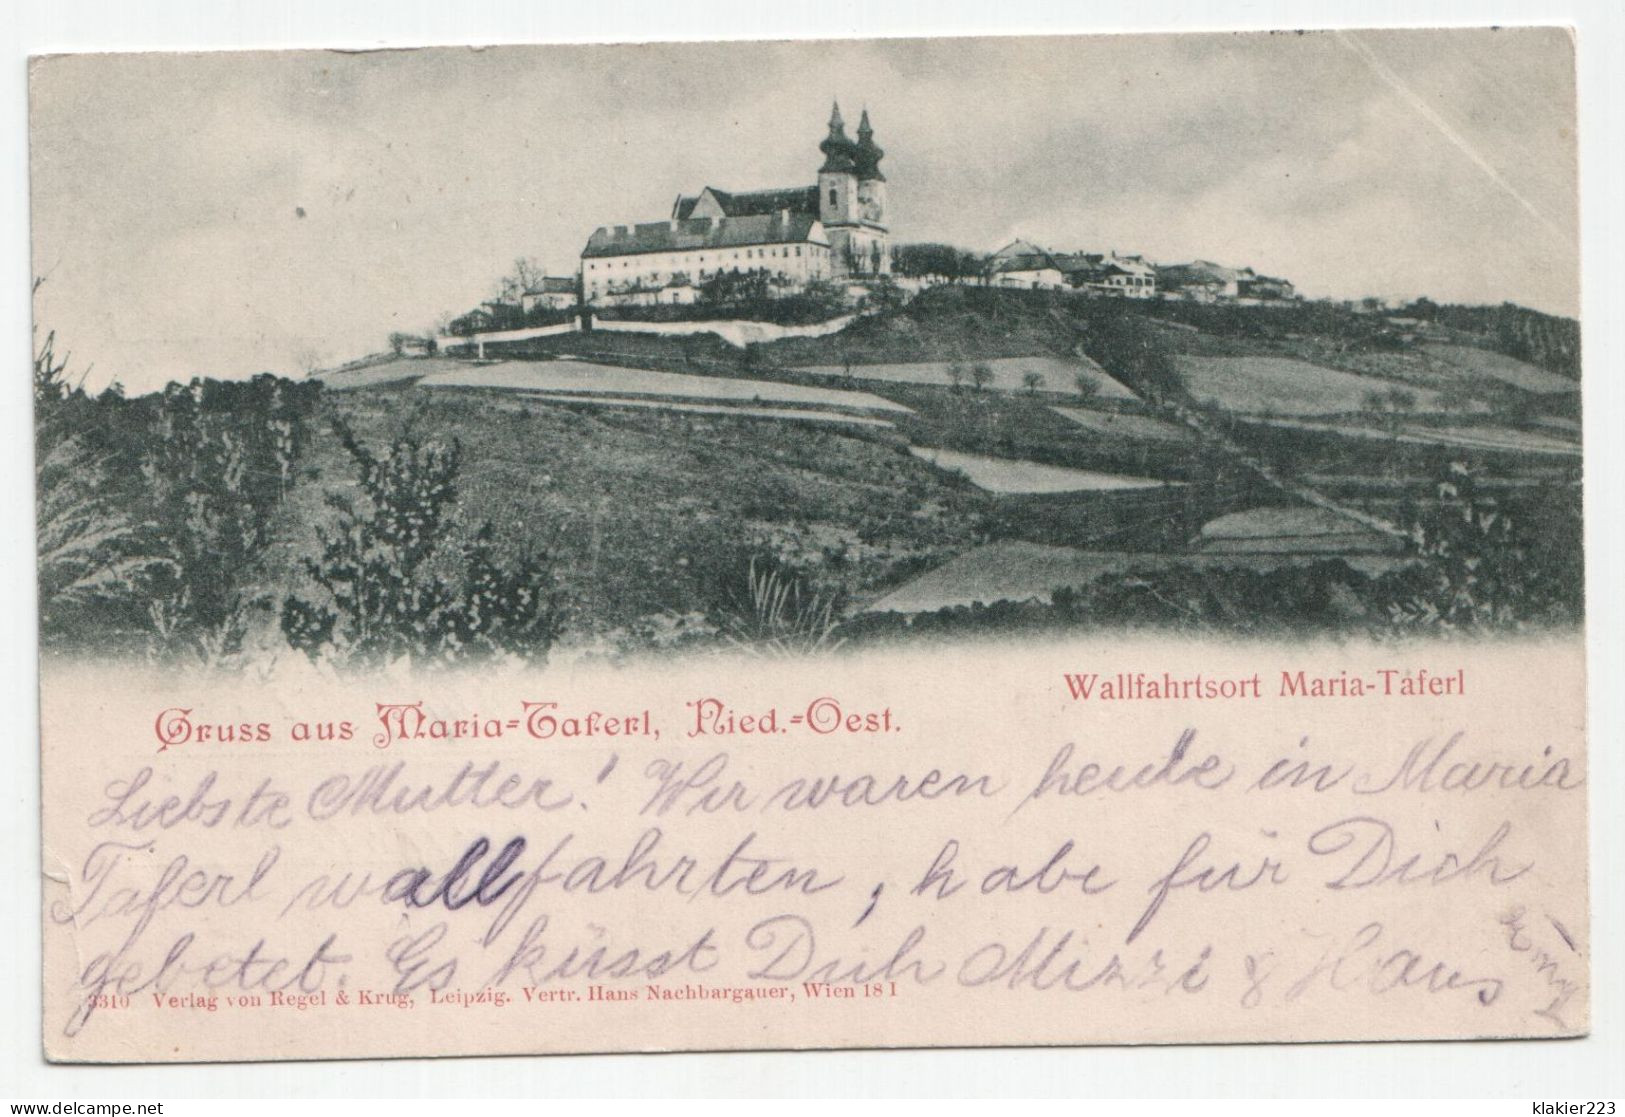 Gruss Aus Maria Taferl Nieder Österriech Wallfahrtsort Maria Taferl. Jahr 1899 - Melk